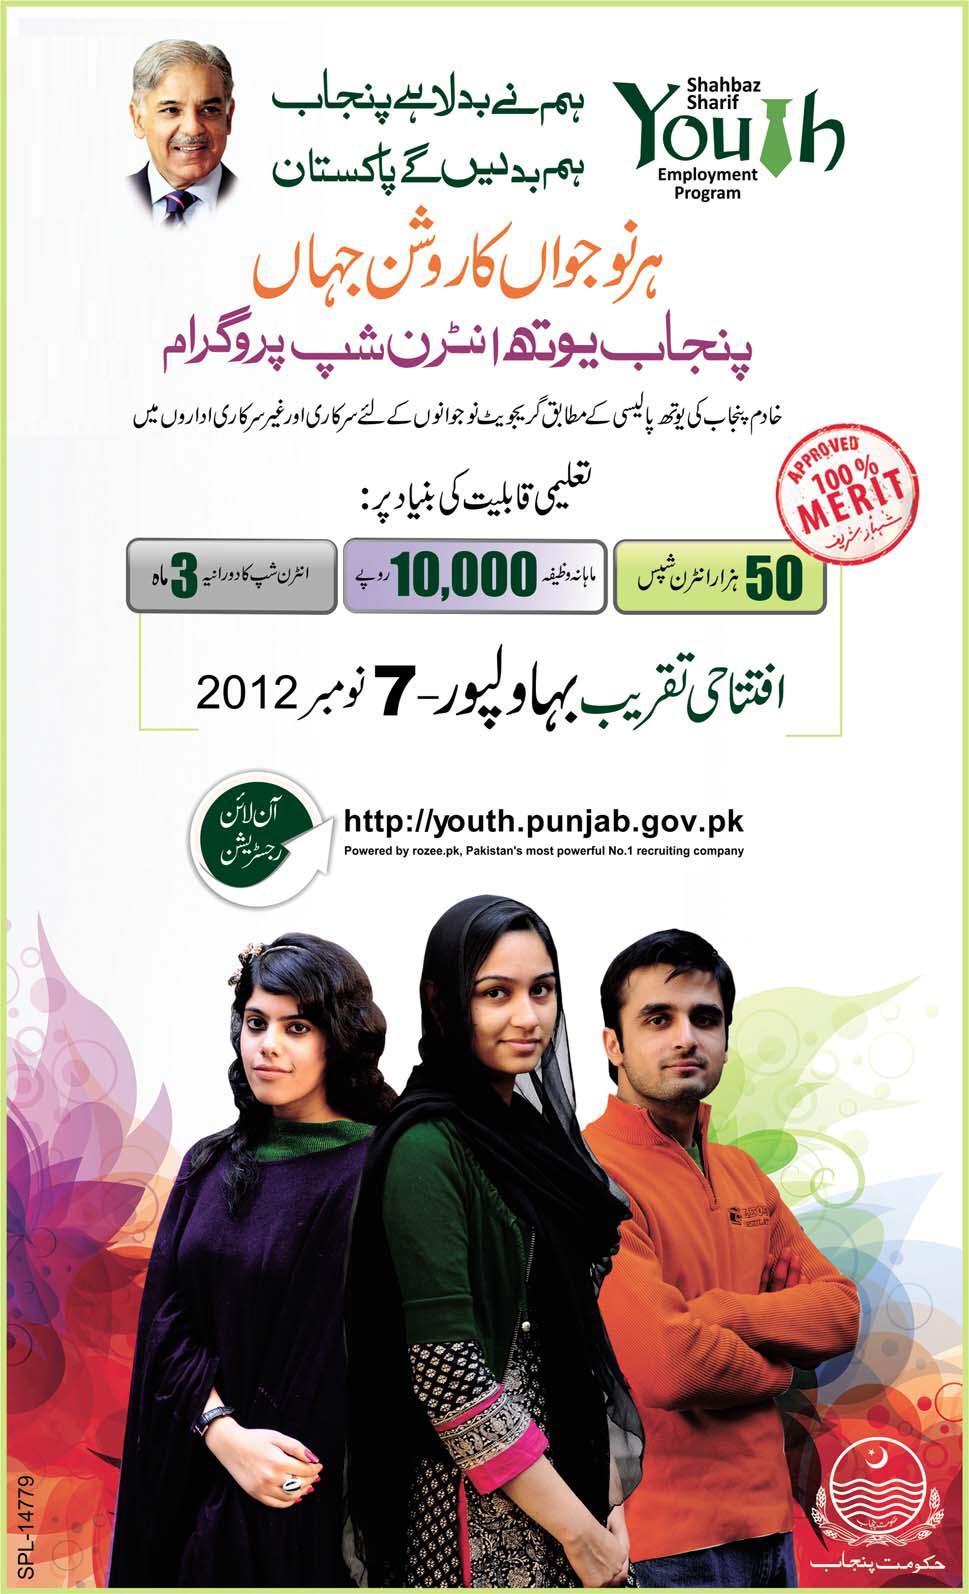 Punjab Youth Internship Program (PYIP) 2012-2013